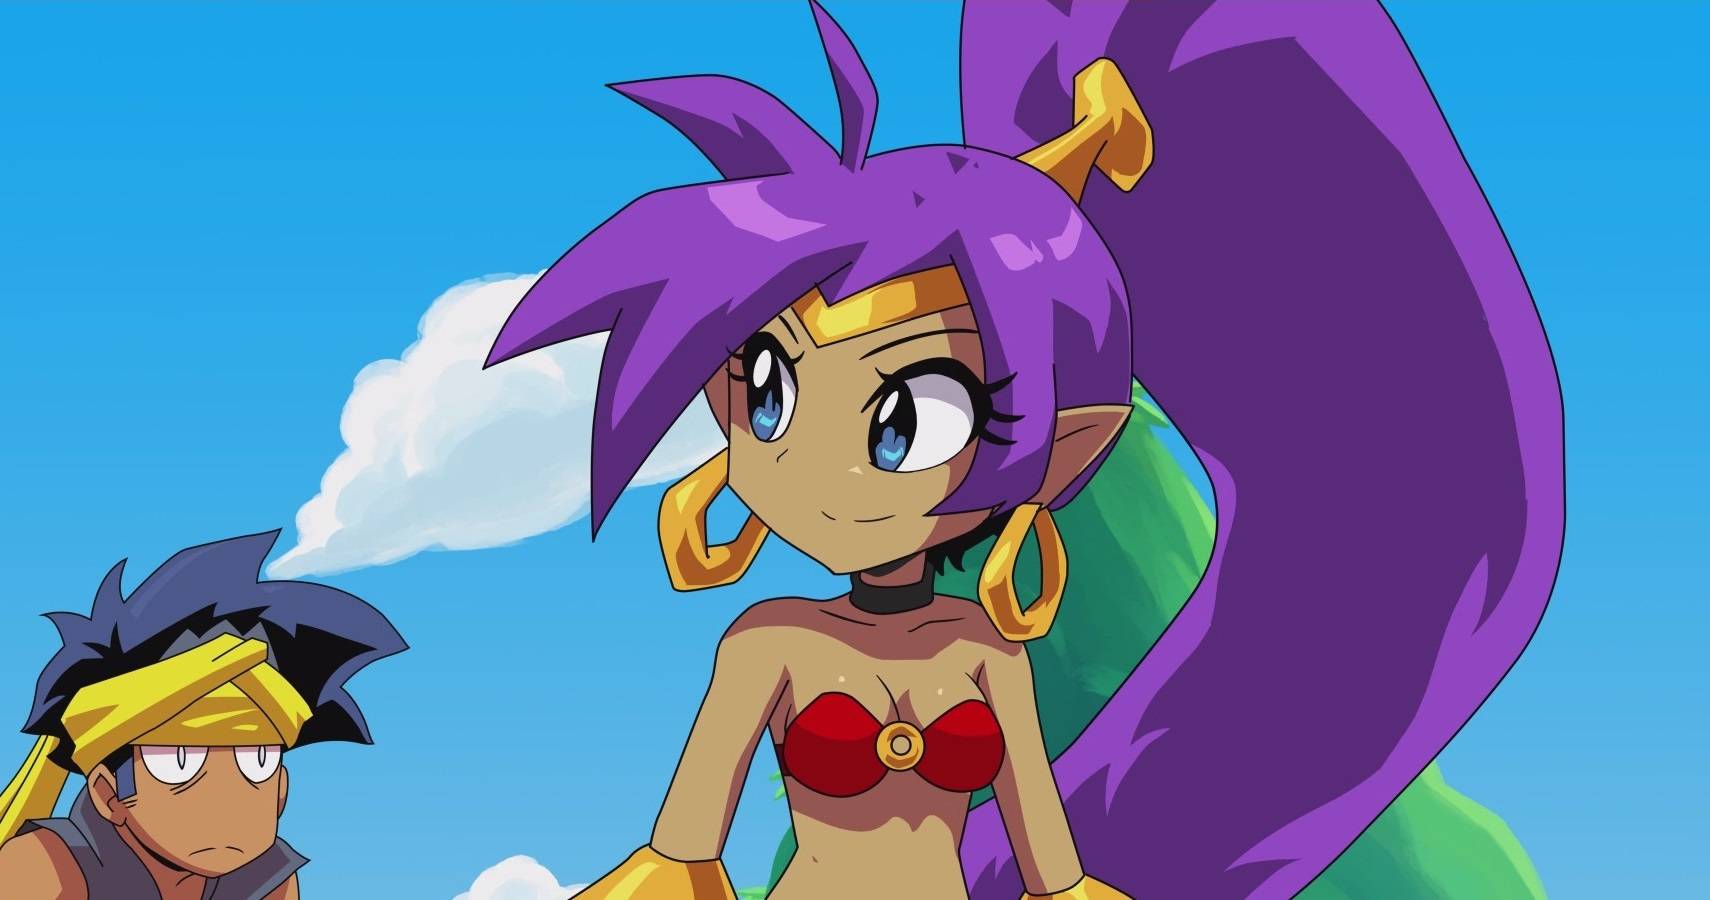 Shantae animated